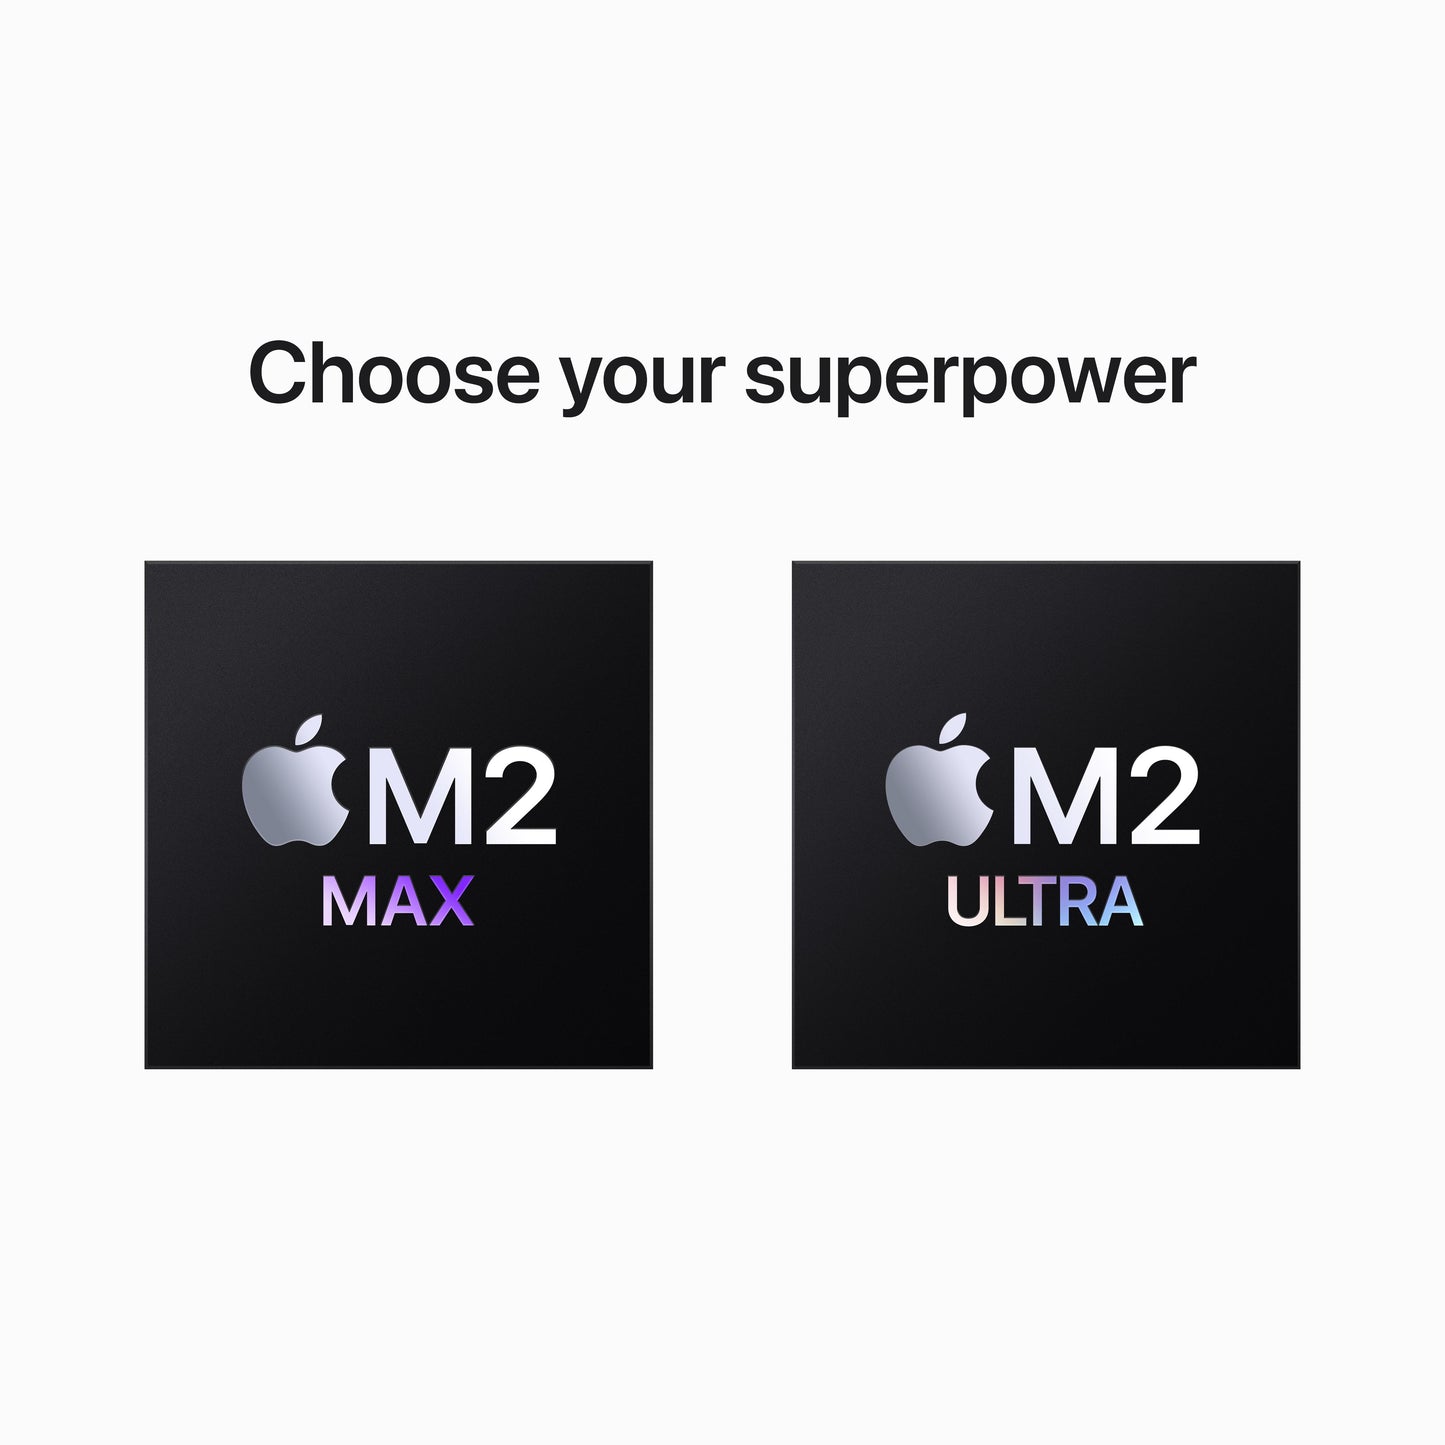 Mac Studio: Apple M2 Max with 12-core CPU, 30-core GPU, 16-core Neural Engine, 512GB SSD